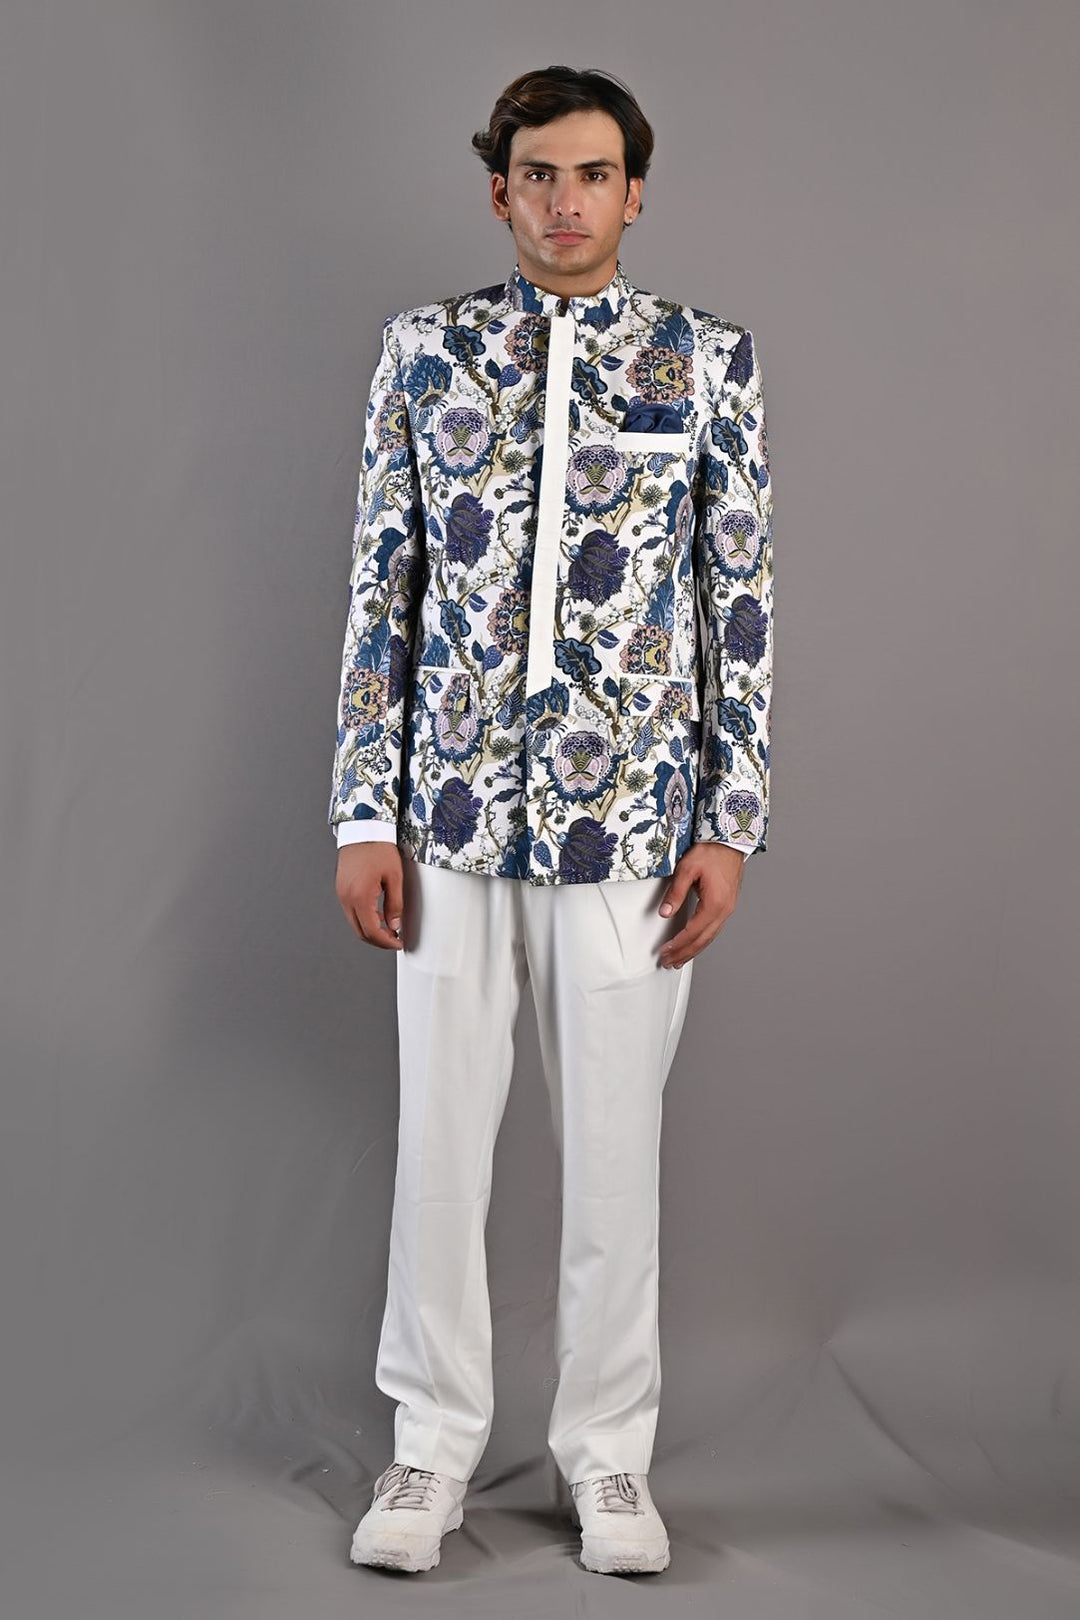 Karl - Multi Blue Printed Bandhgala Jacket Set with pant